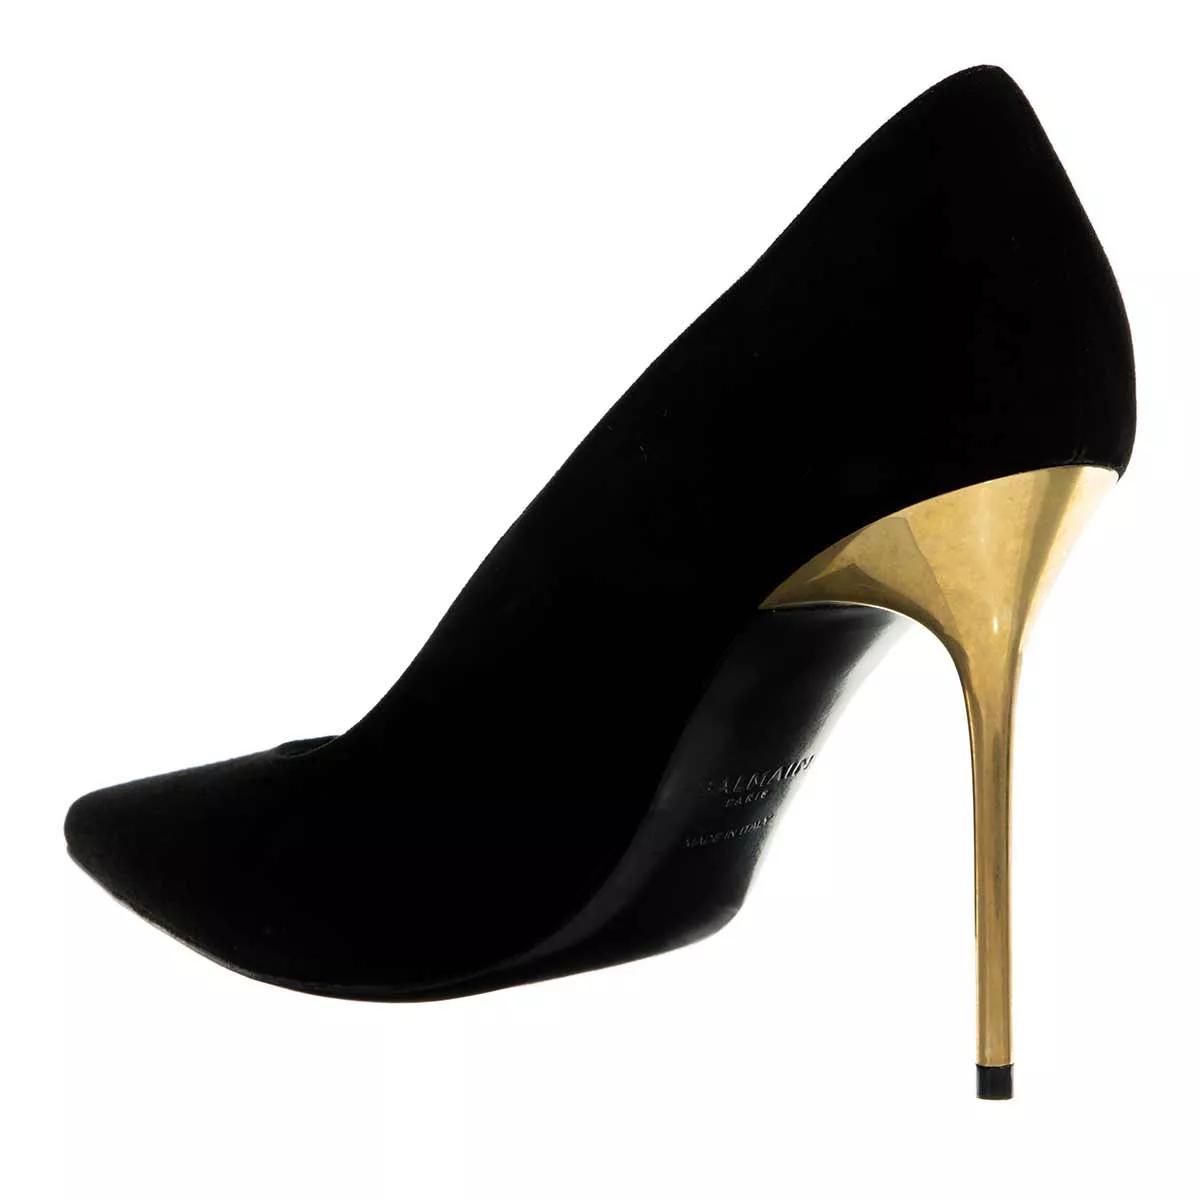 balmain pumps & high heels - ruby high heels - gr. 38 (eu) - in - fÃ¼r damen schwarz donna